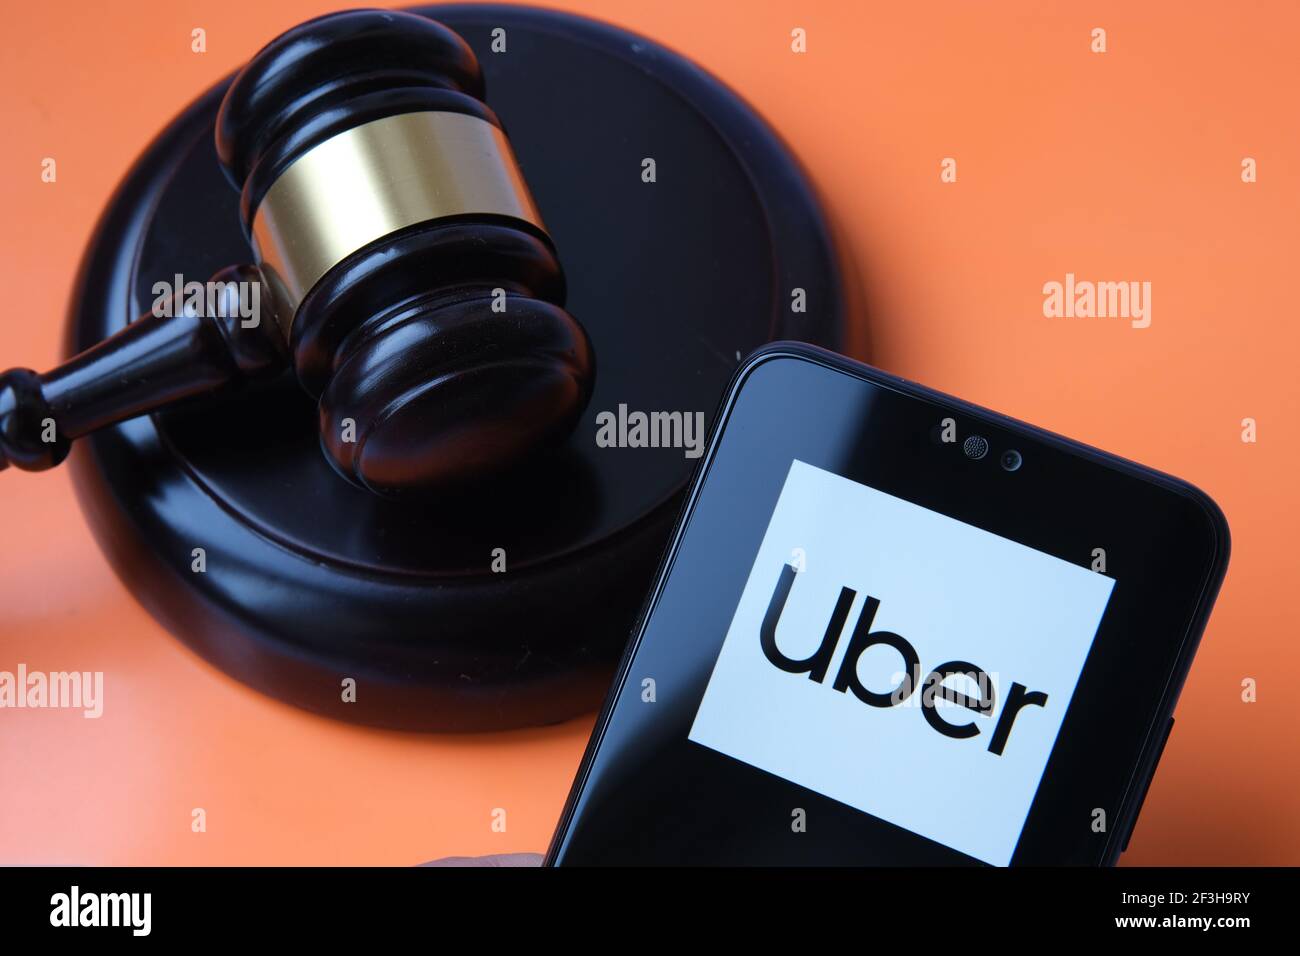 Logo Uber vu sur smartphone et juge gavel sur fond flou. Concept de décision judiciaire, droits des conducteurs Uber par la Cour suprême. Stafford, Unite Banque D'Images